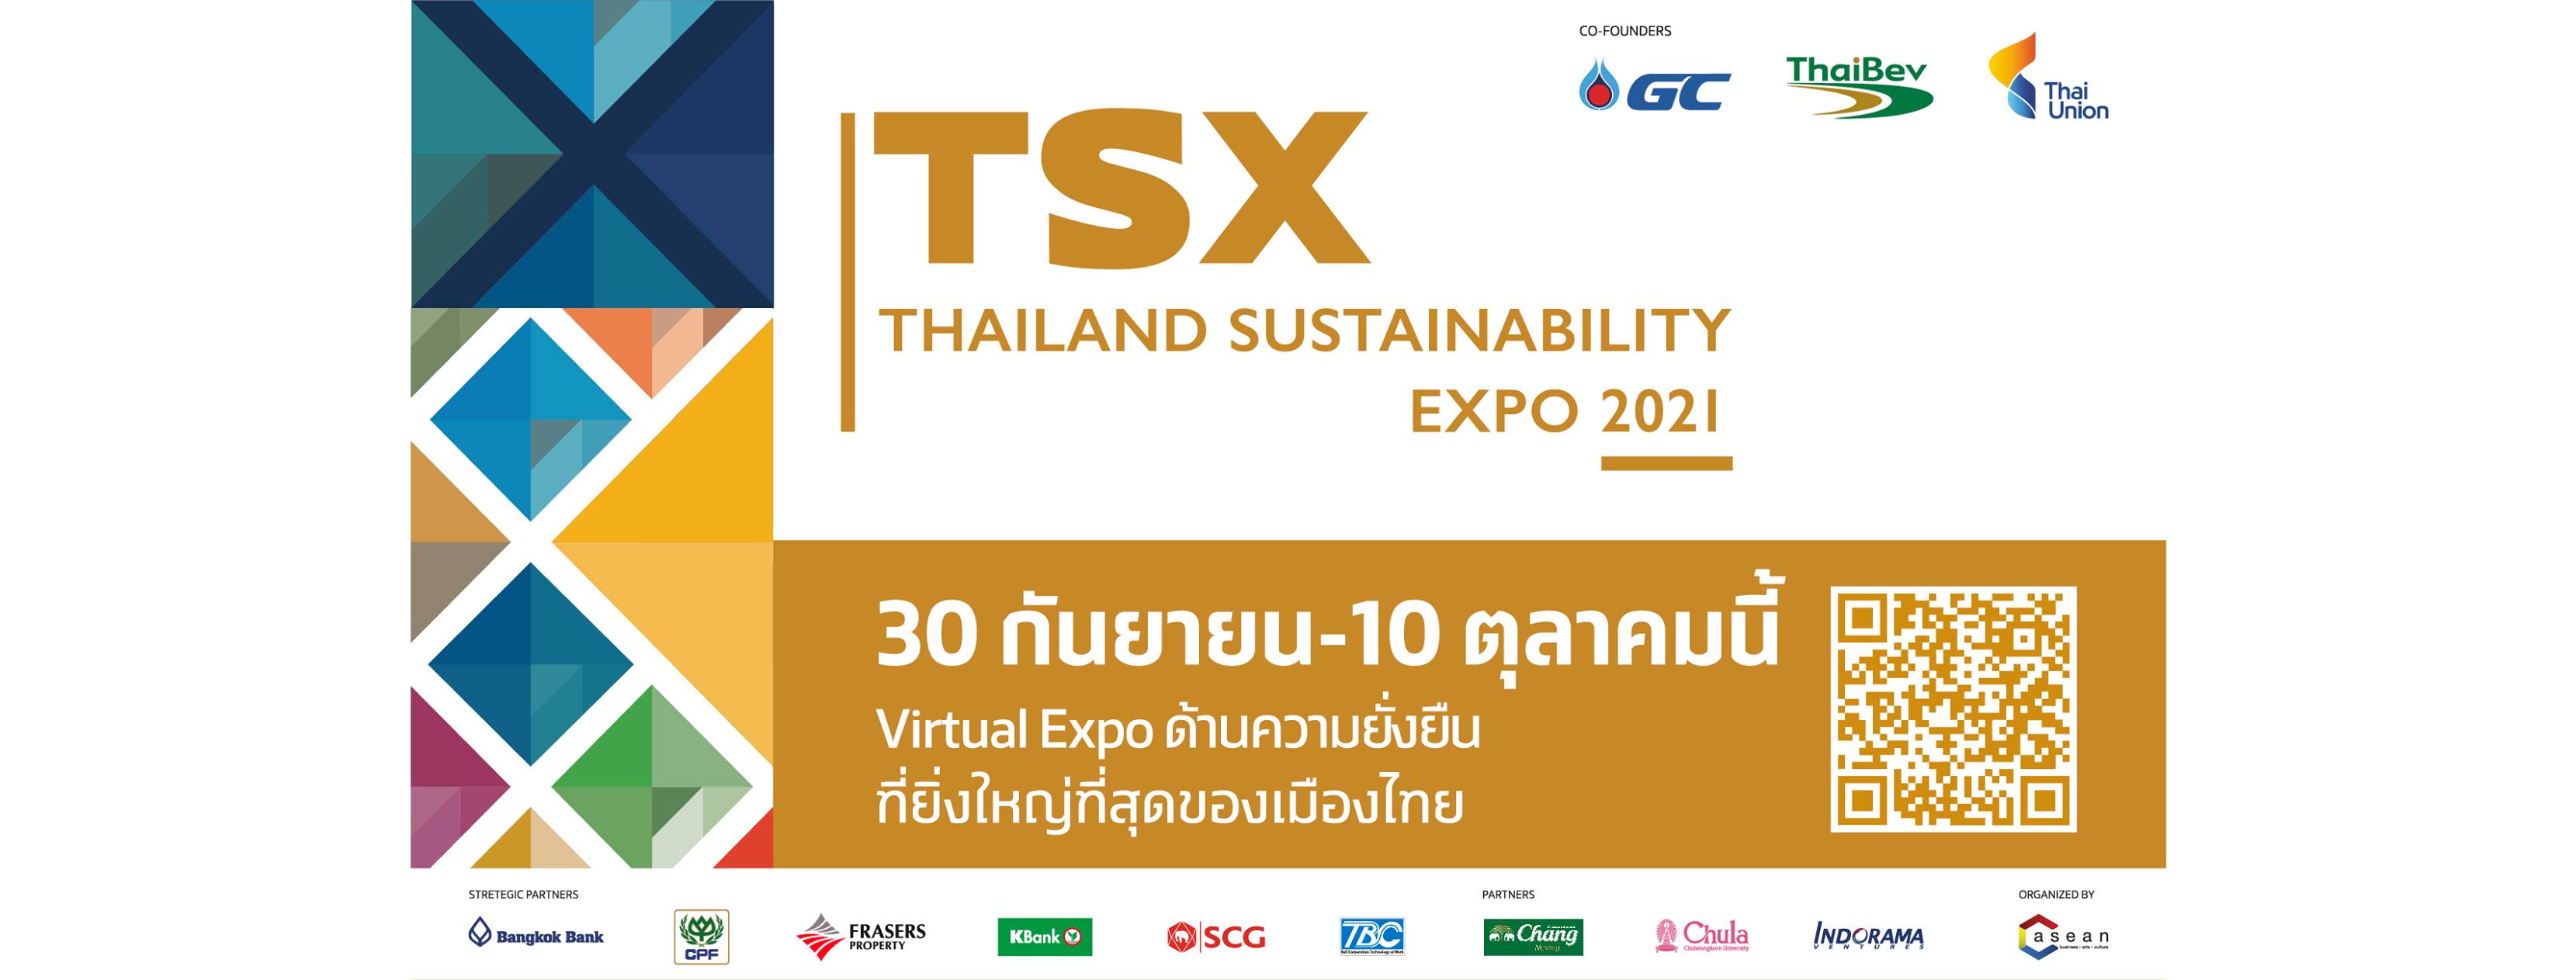 มาร่วมค้นหาทางออกให้โลกน่าอยู่มากขึ้นที่งาน TSX2021 Thailand Sustainability Expo ครั้งแรกของเมืองไทยกับ Virtual Expo ด้านความยั่งยืนที่ยิ่งใหญ่ที่สุด โลกดิจิทัลเสมือนจริงบนหน้าจอมาร่วมอุดหนุนร้านค้าสายกรีนรักษ์โลก